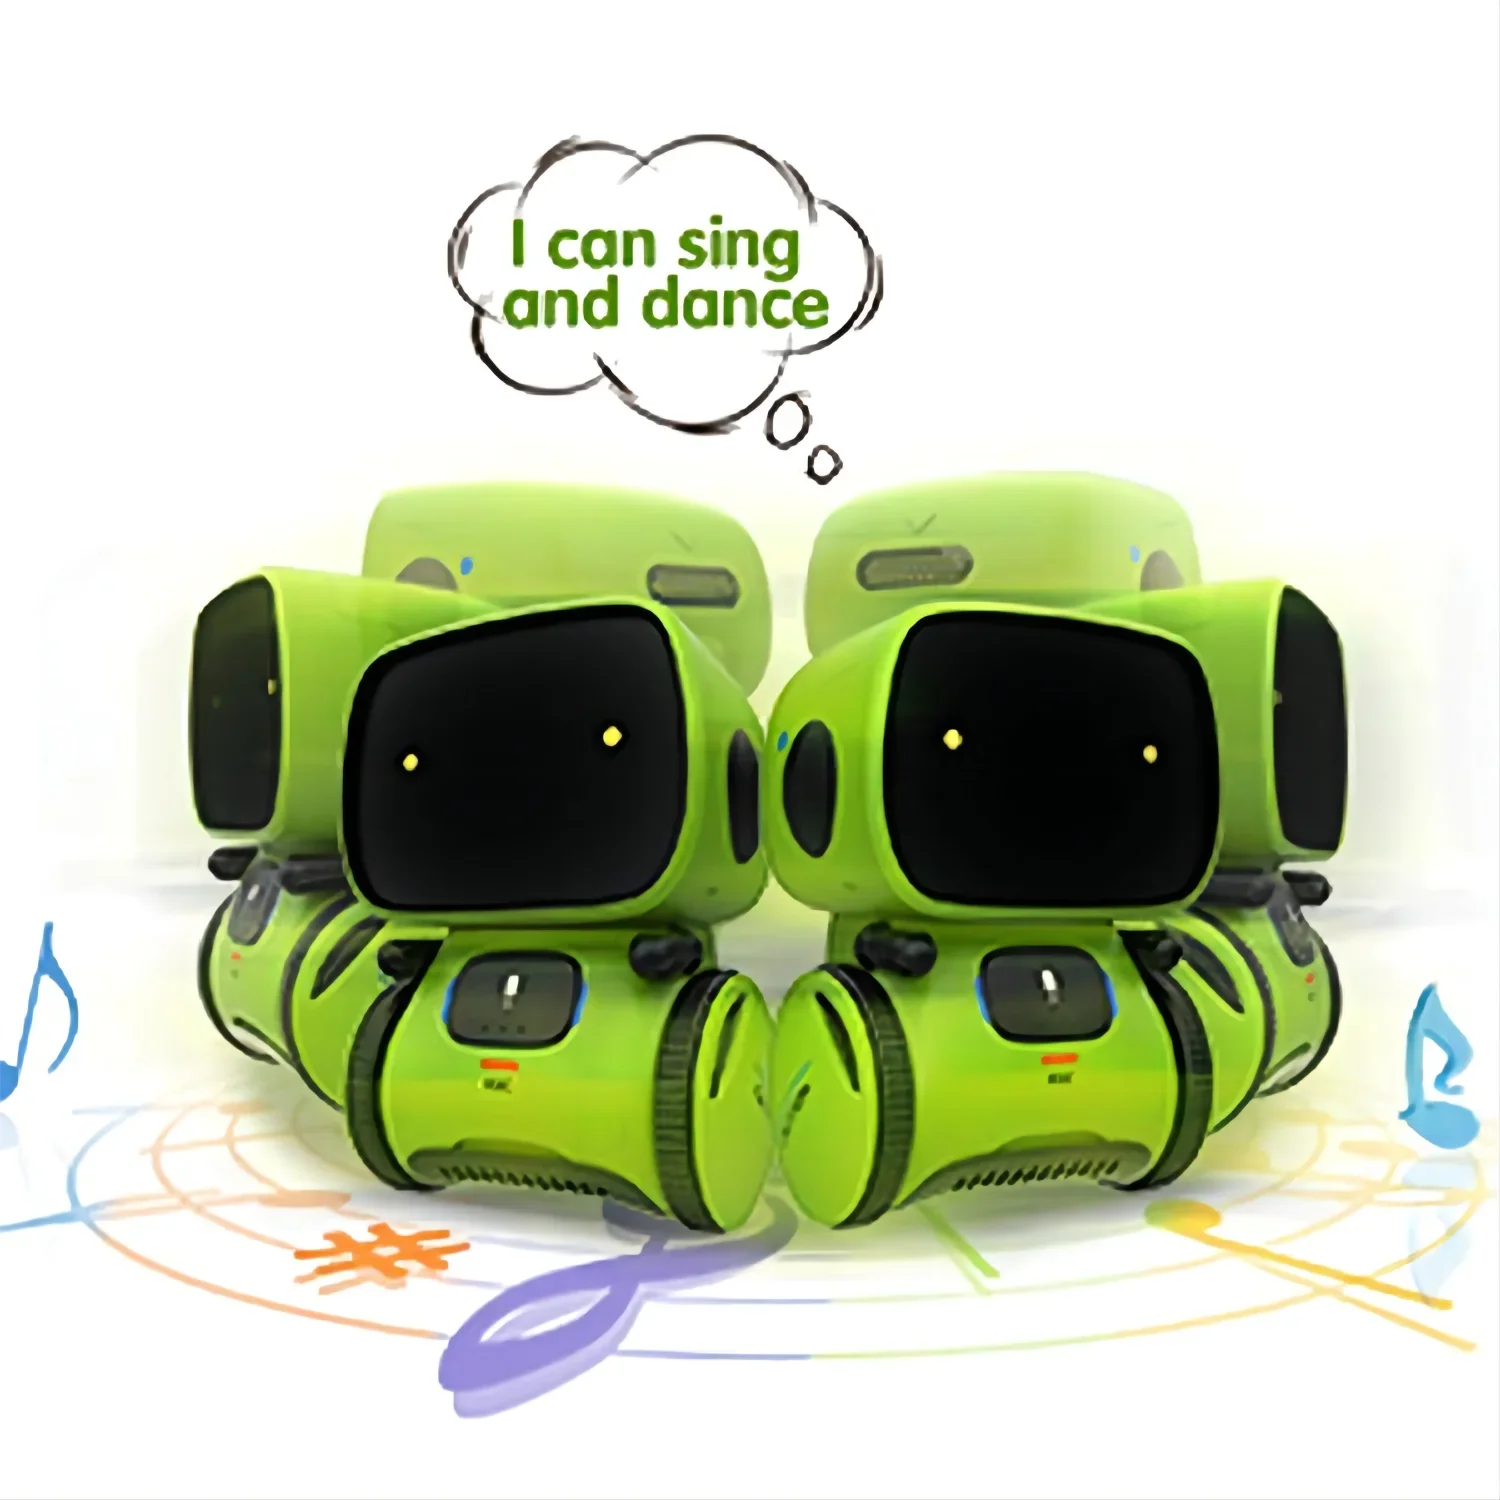 Умный робот танцующий, Интерактивная игрушка с голосовой командой и сенсорным управлением, 3 языковых версии, подарок для детей